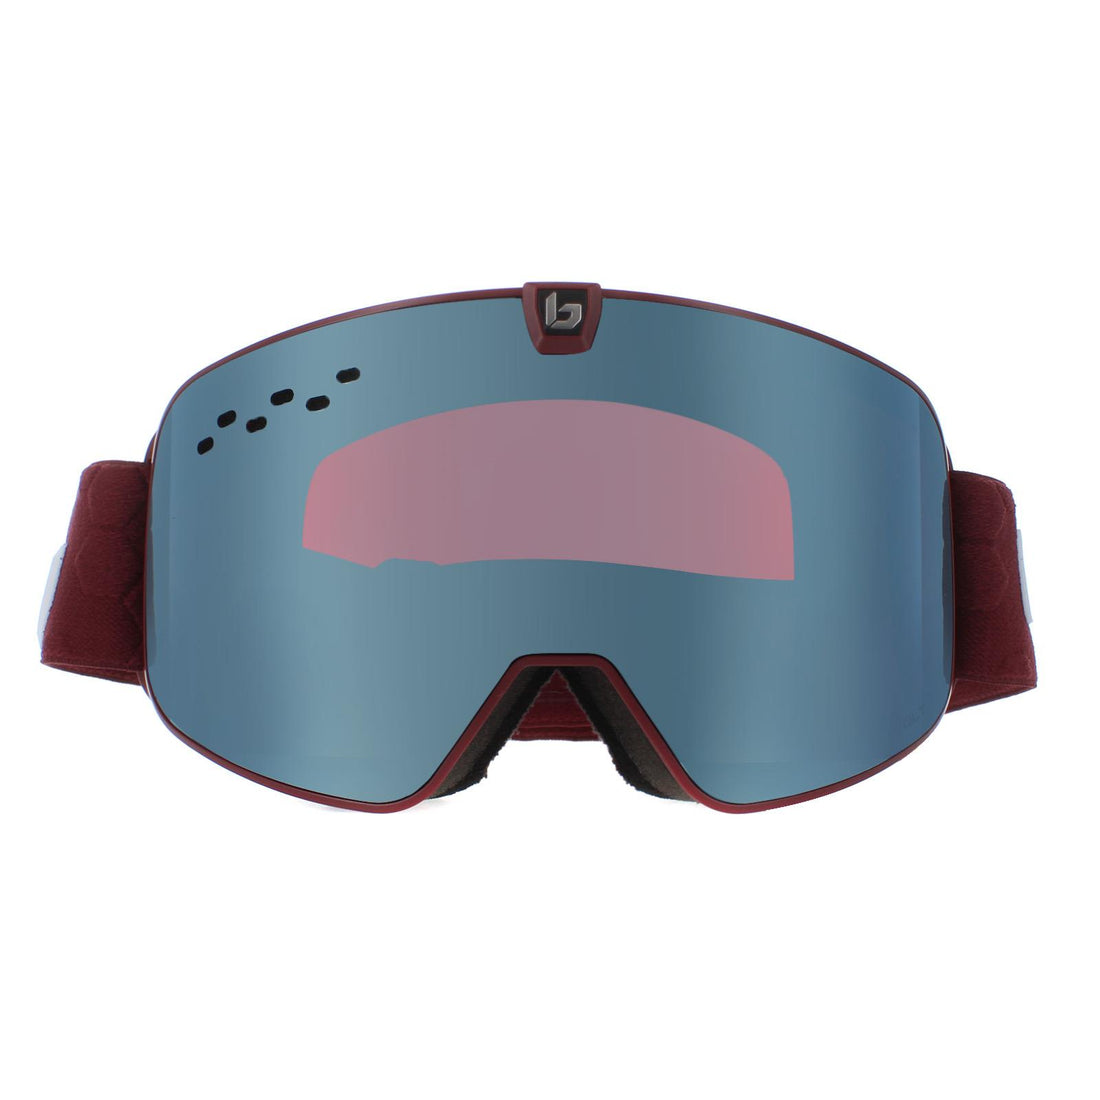 Bolle Ski Goggles Nevada BG394003 Matte Garnet Volt Ice Blue